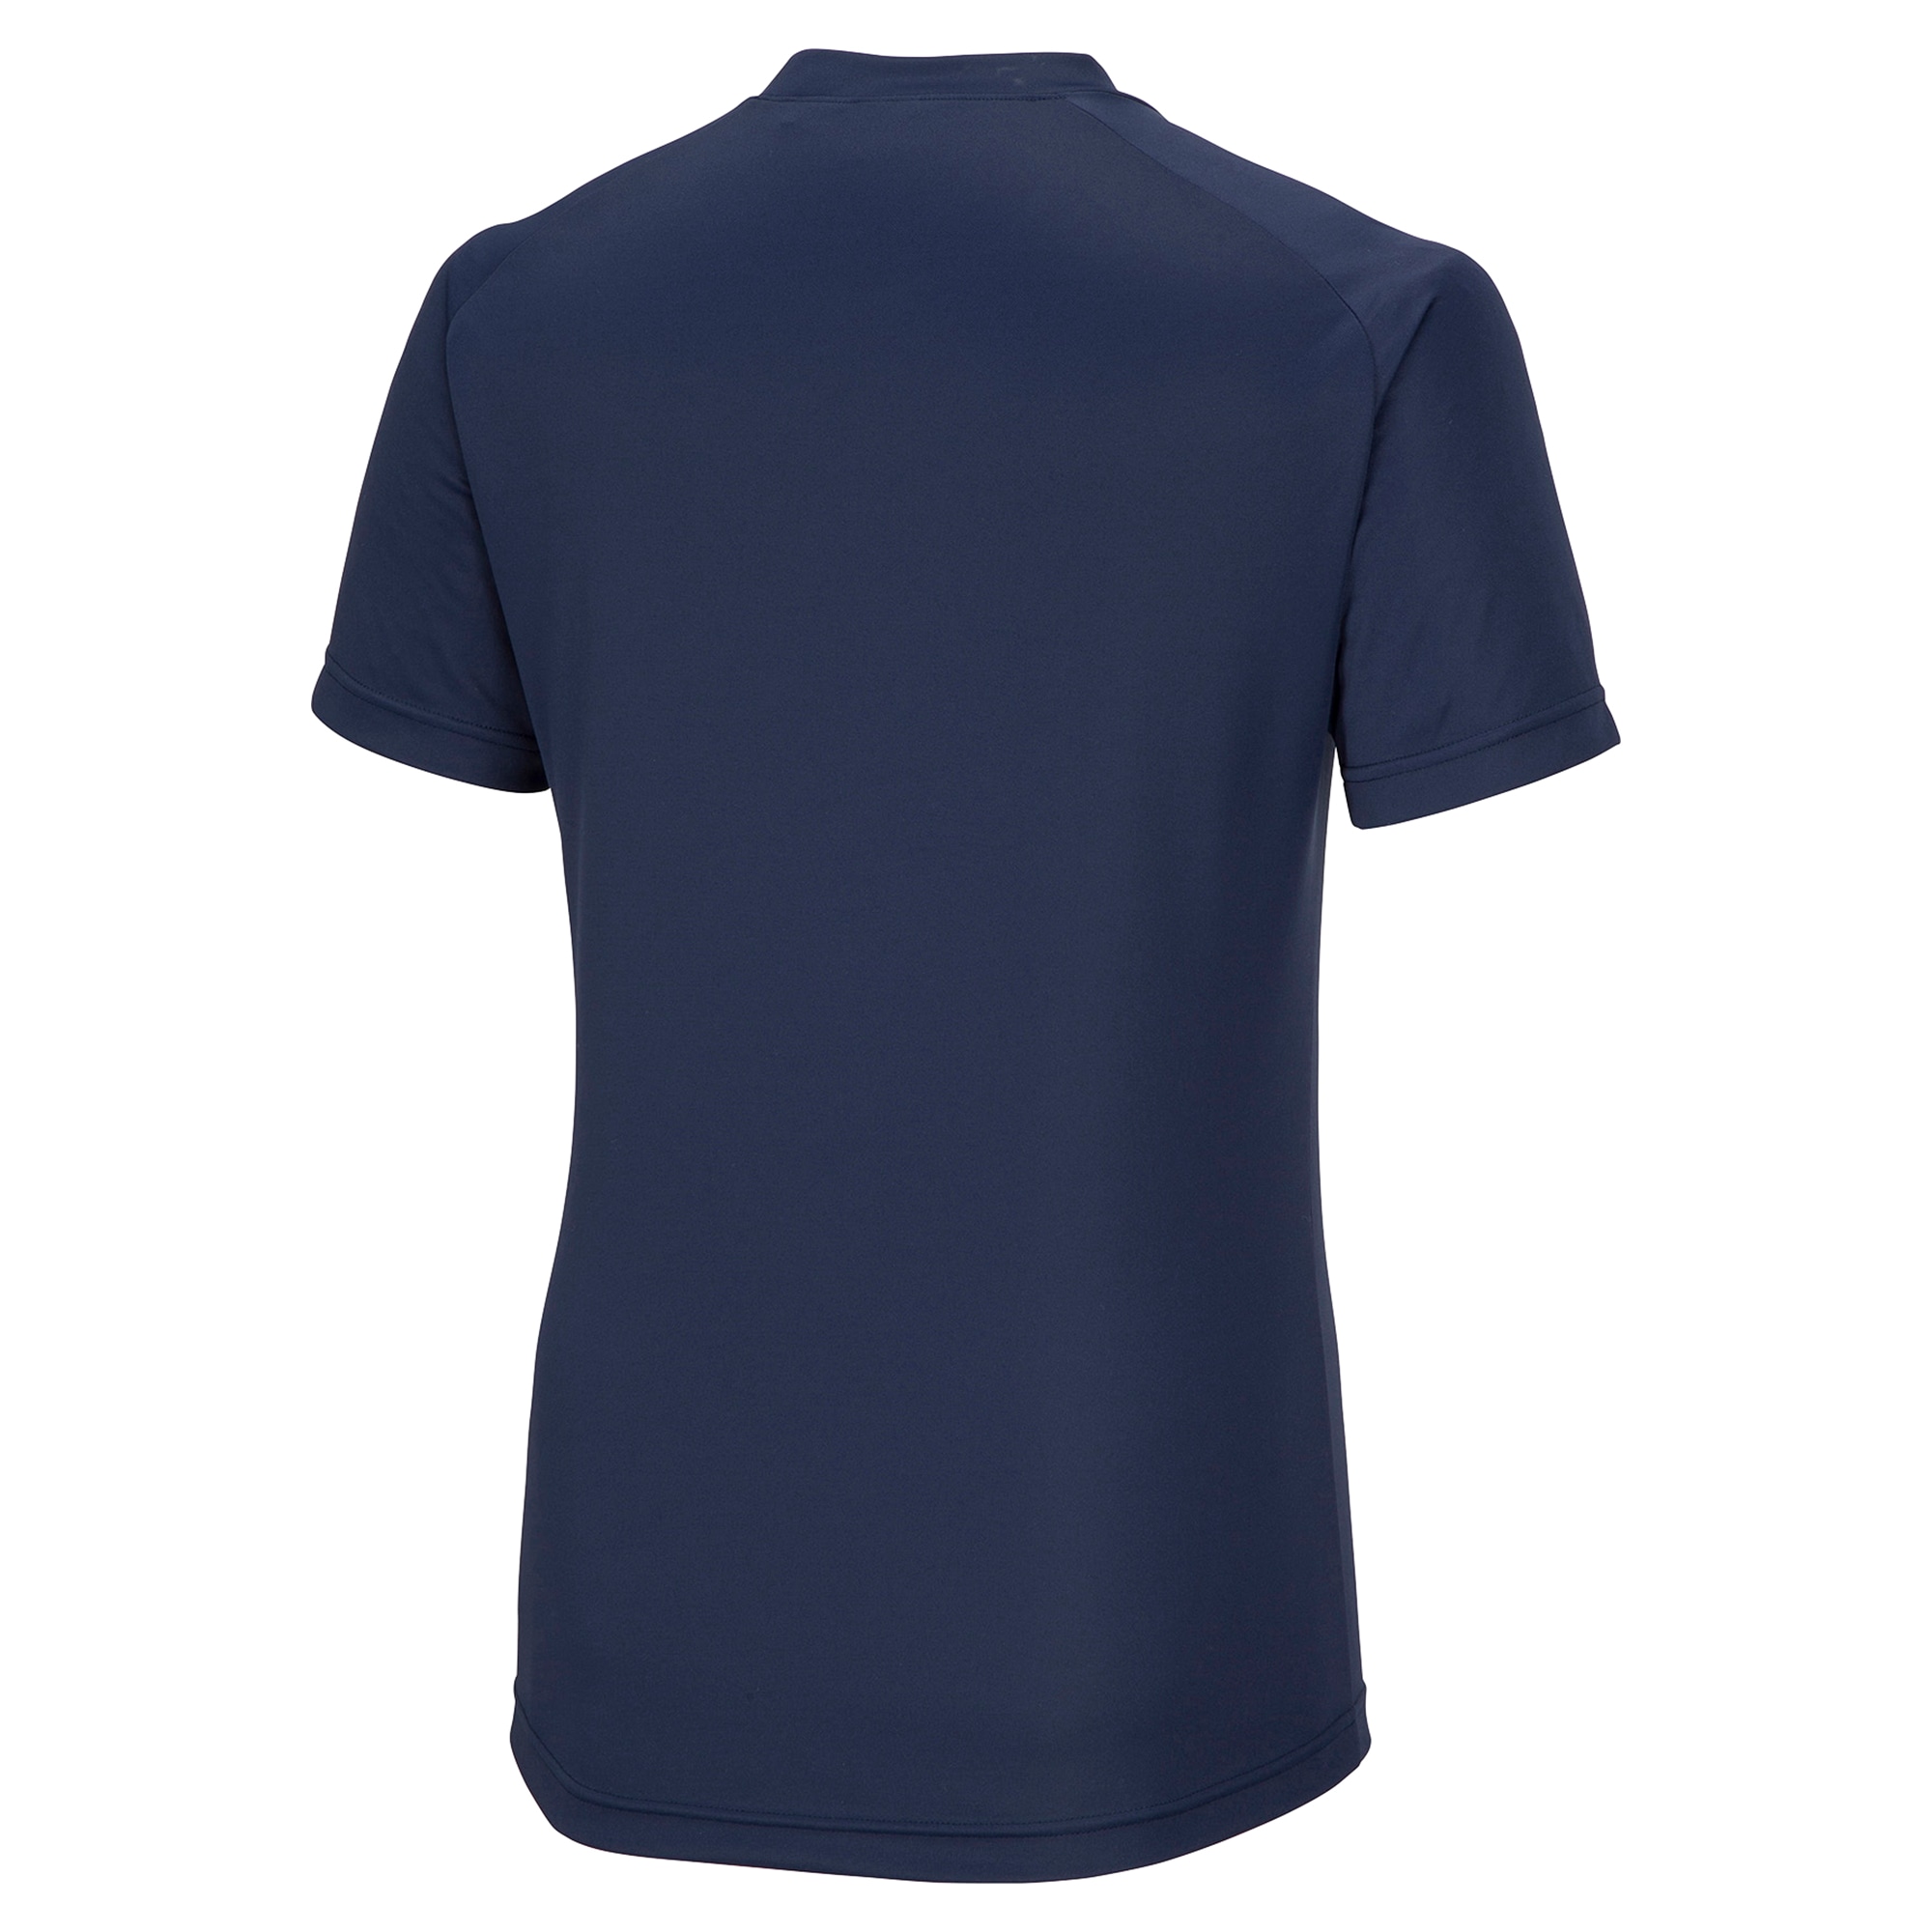 フィールドシャツ[ユニセックス]|P2MA8025|ウエア|サッカー ...